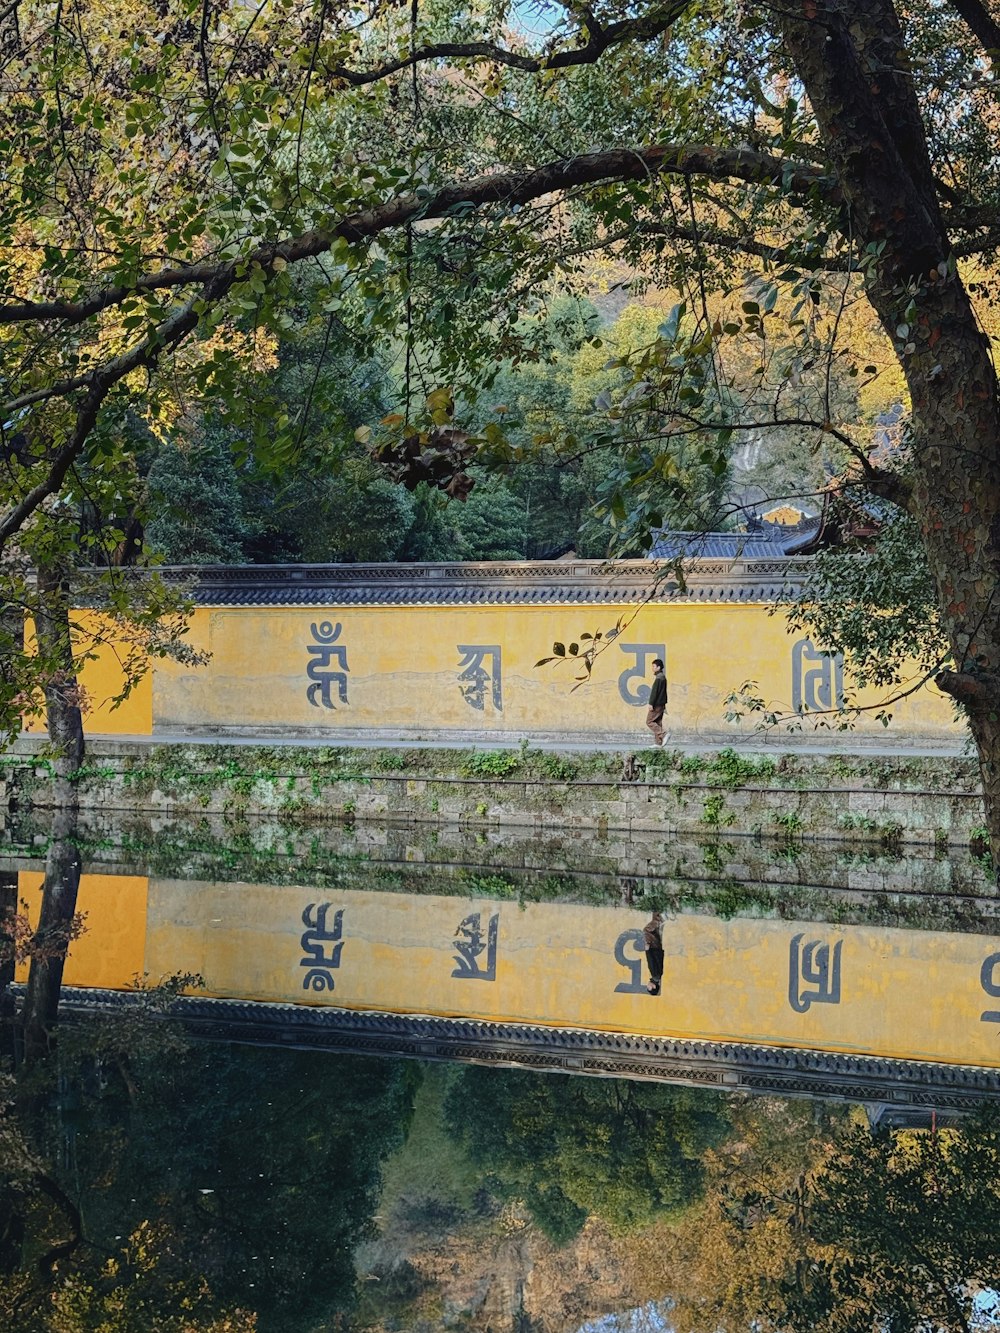 eine gelbe Brücke über ein von Bäumen umgebenes Gewässer